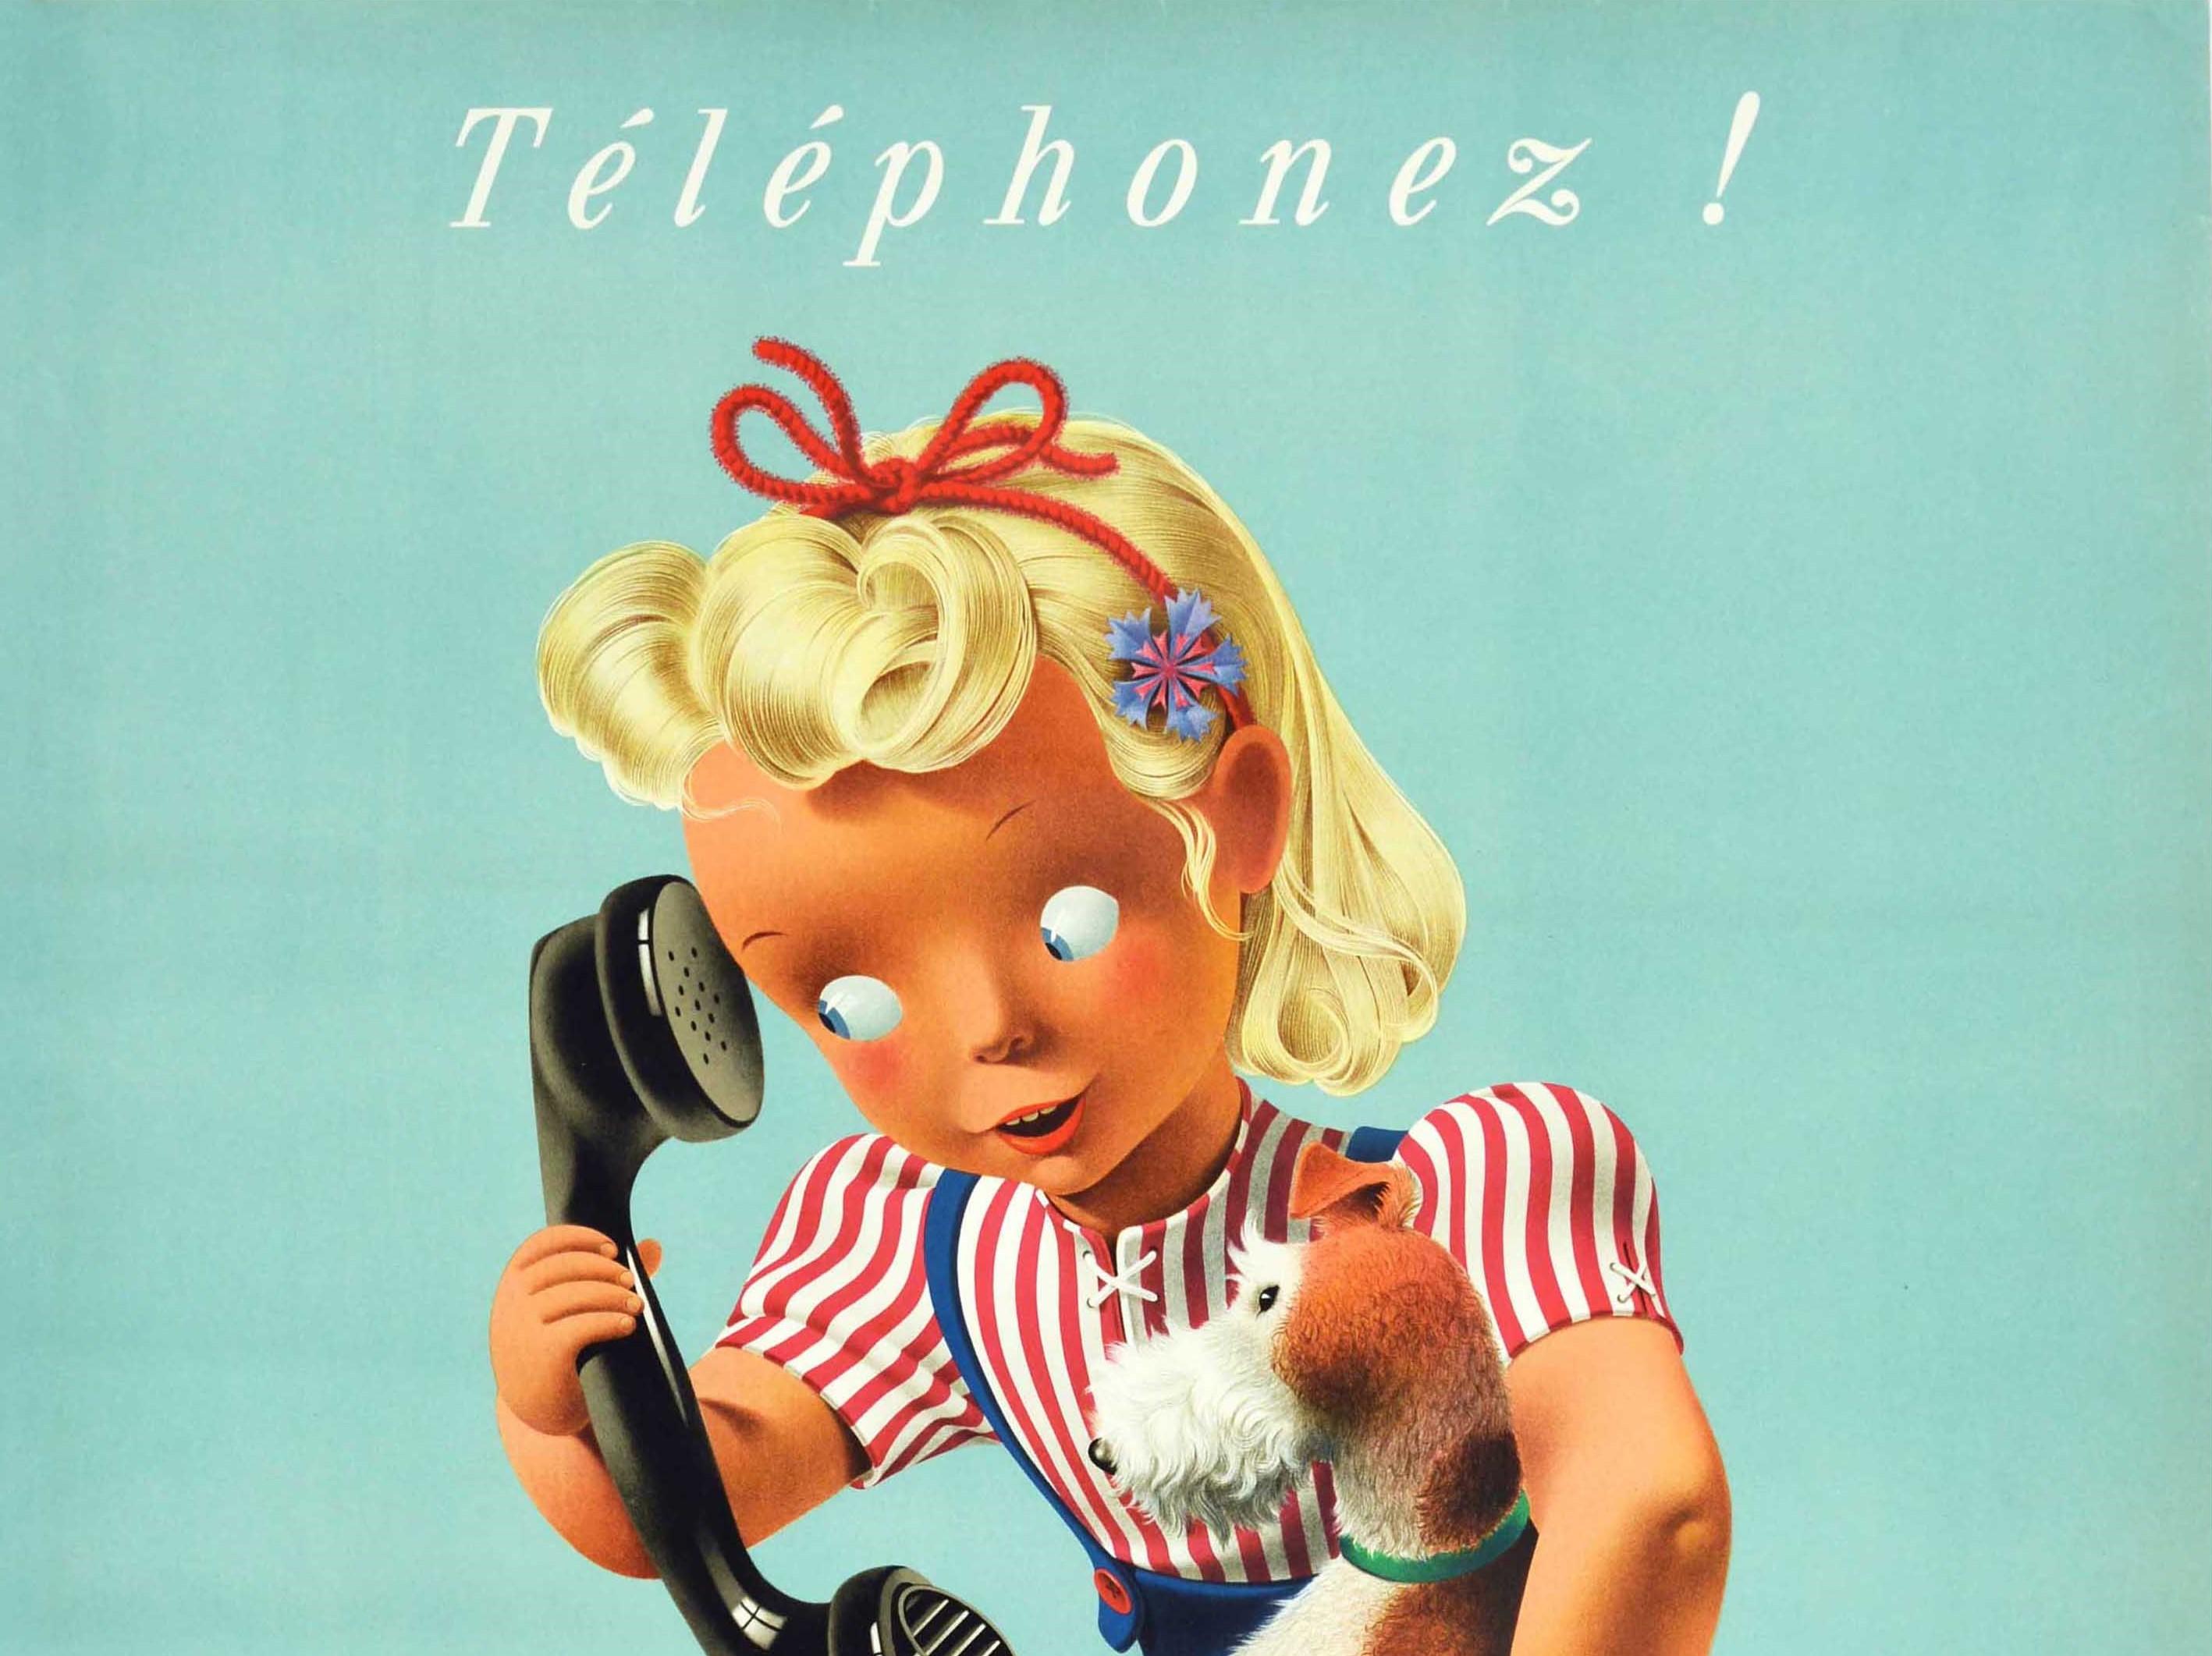 Affiche vintage originale Telephonez ! Art publicitaire suisse des téléphoniques, fille et chien - Print de Donald Brun